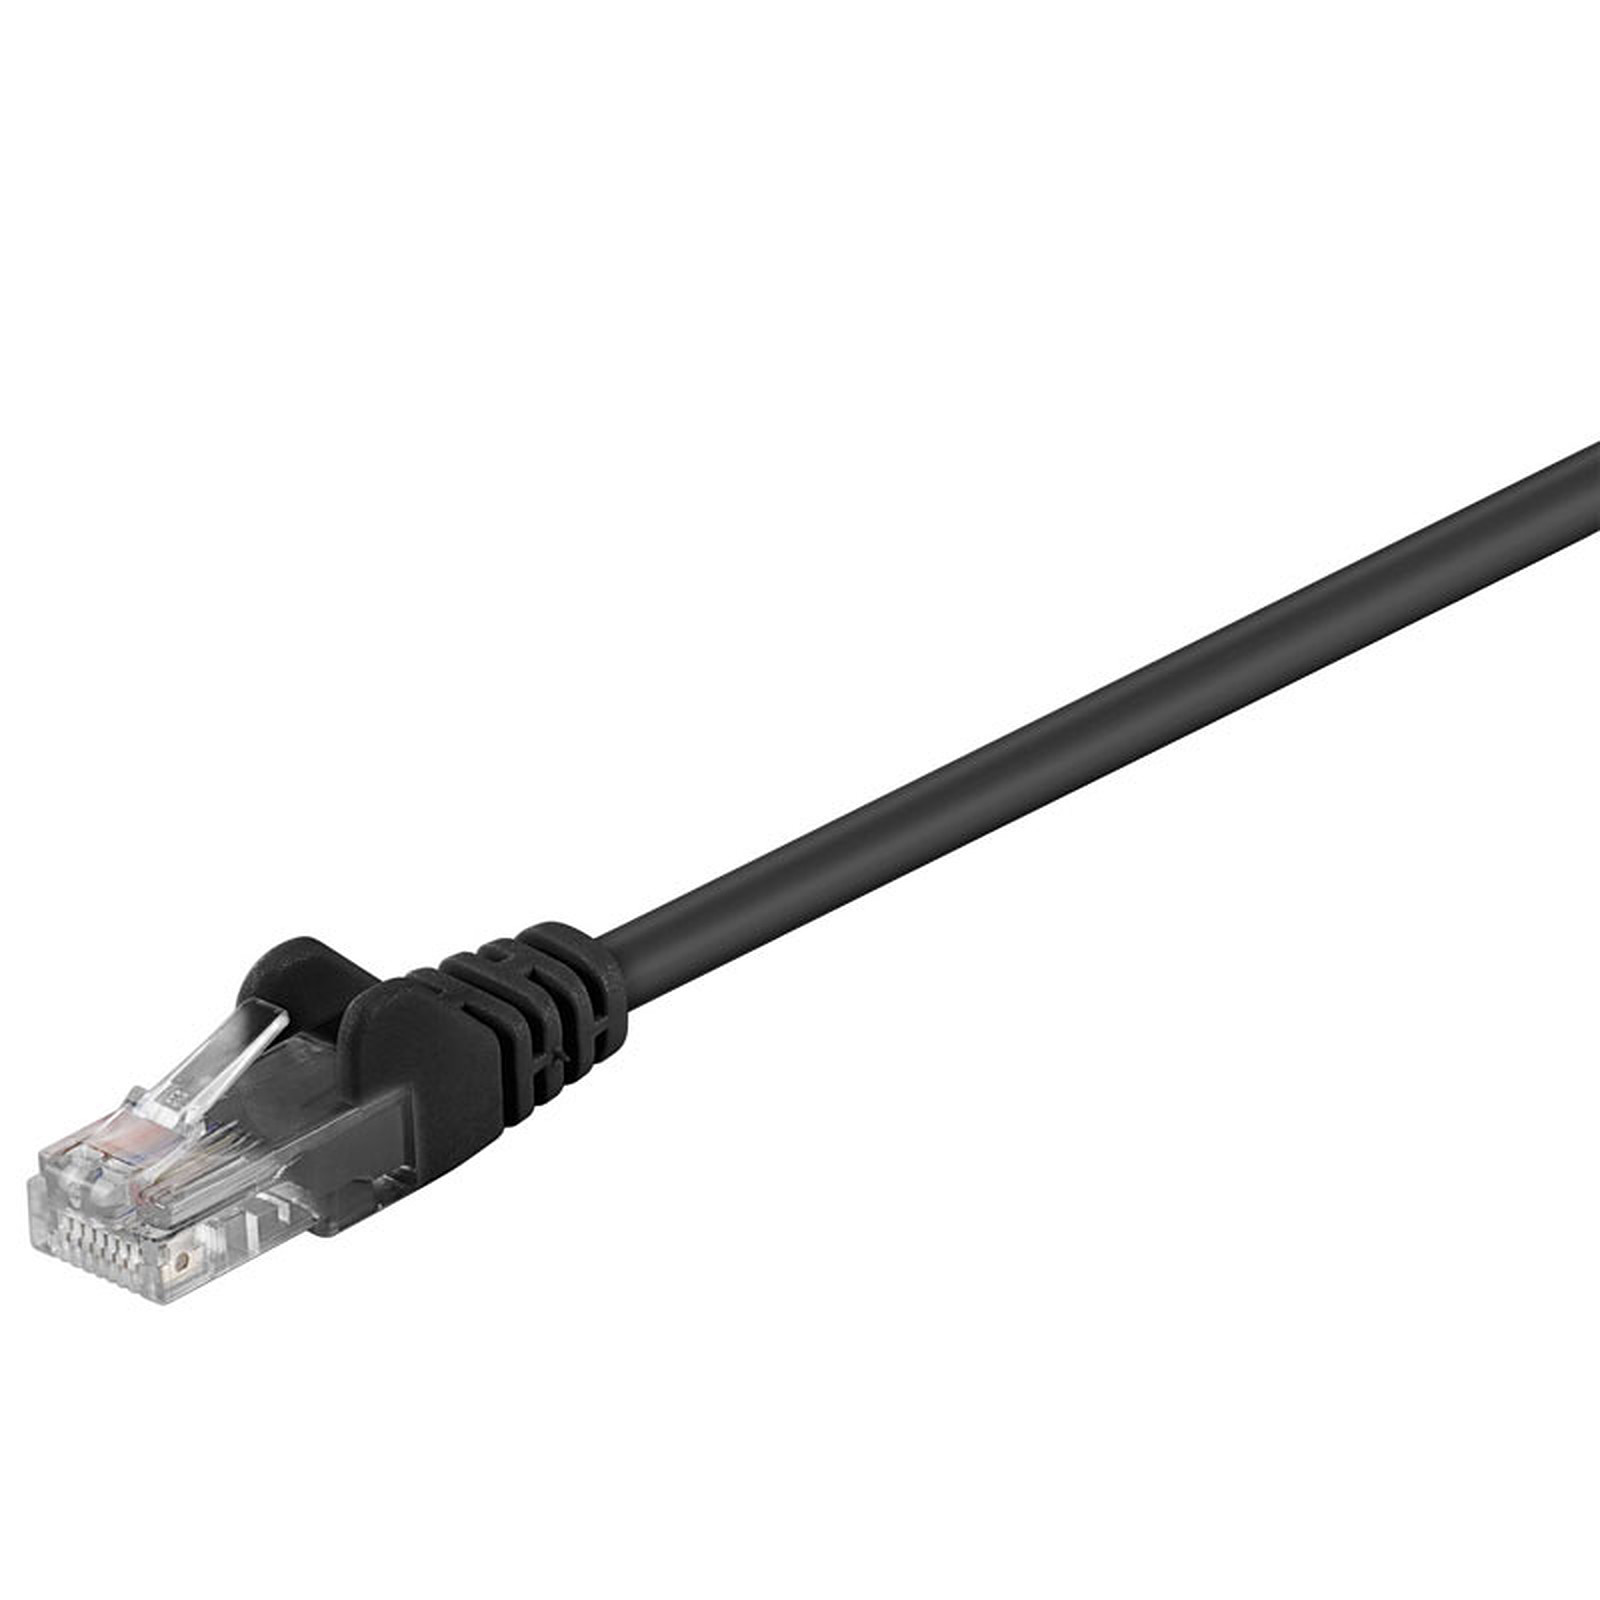 Cable RJ45 categorie 5e U/UTP 2 m (Noir) - Cable RJ45 Generique